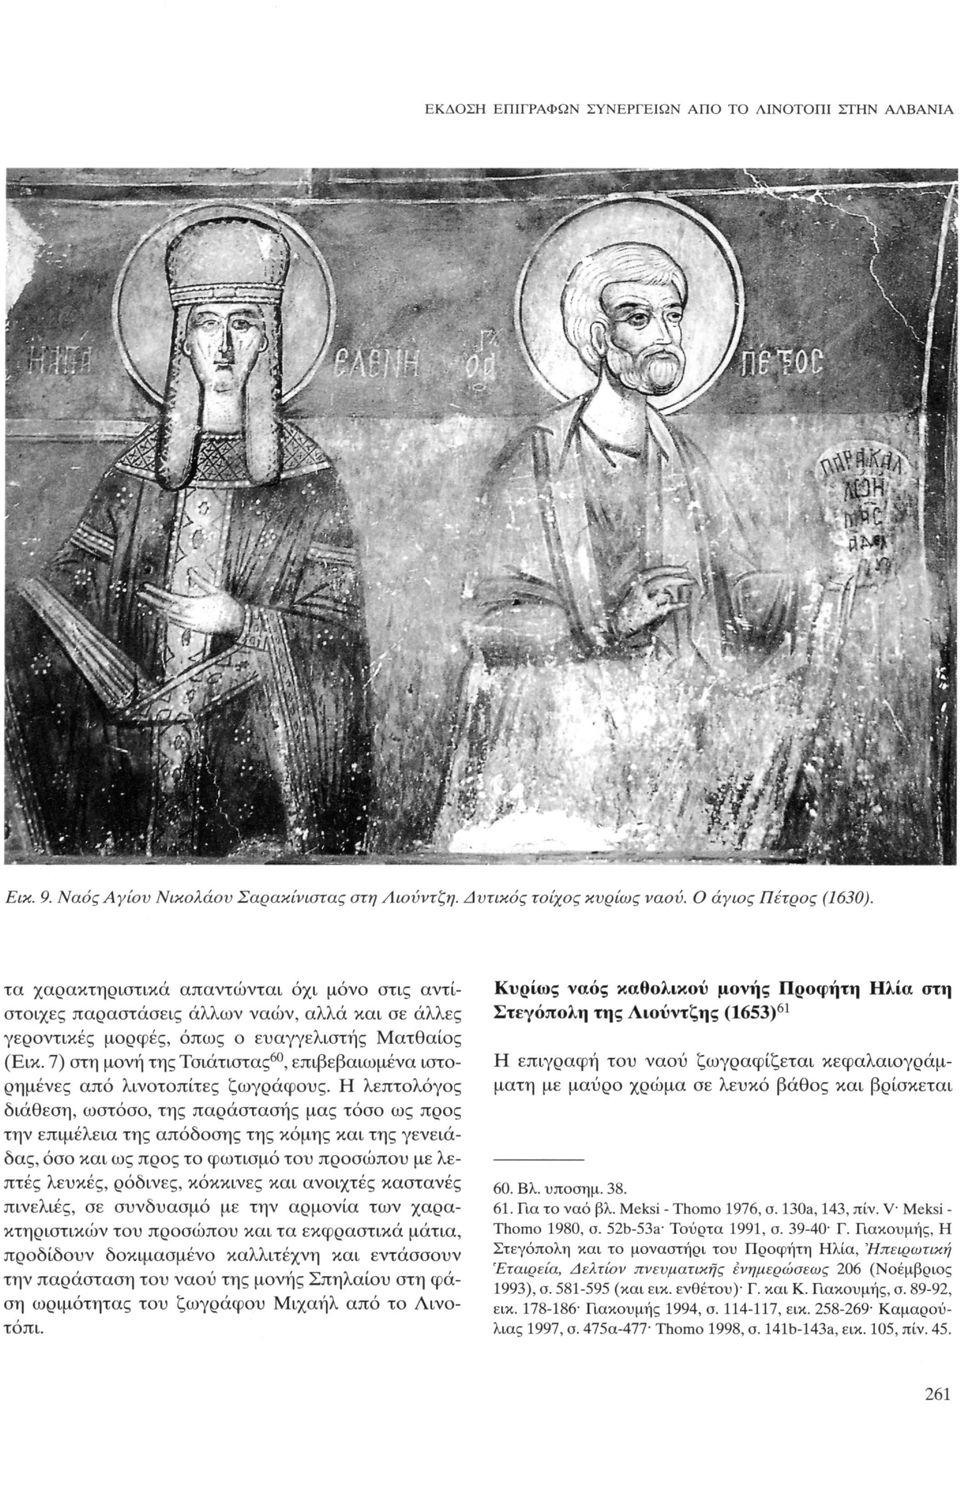 7) στη μονή της Τσιάτιστας 60, επιβεβαιωμένα ιστορημένες από λινοτοπίτες ζωγράφους.